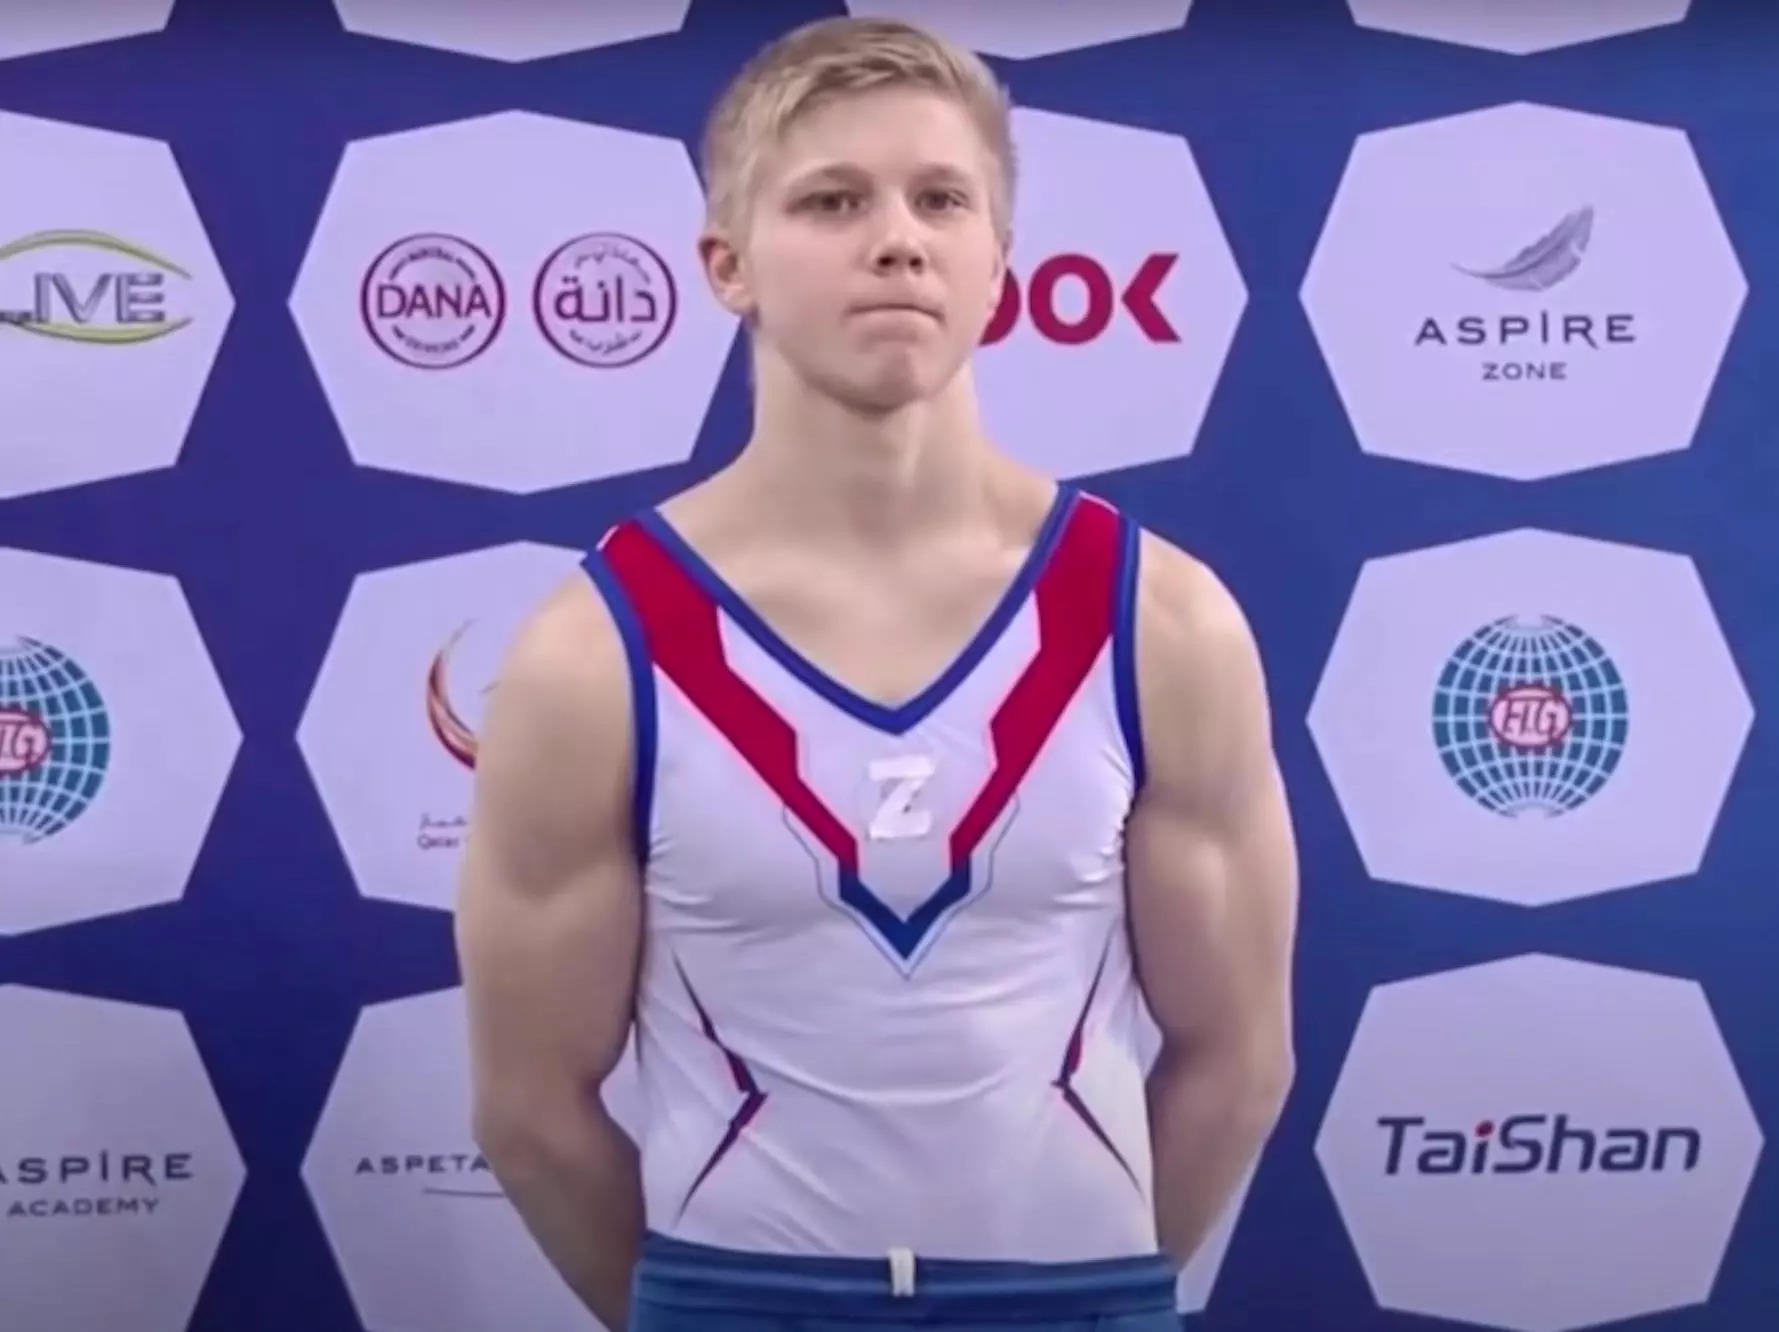 Российского гимнаста, который носил на соревнованиях провоенный символ «Z», дисквалифицировали на год и обязали вернуть медаль